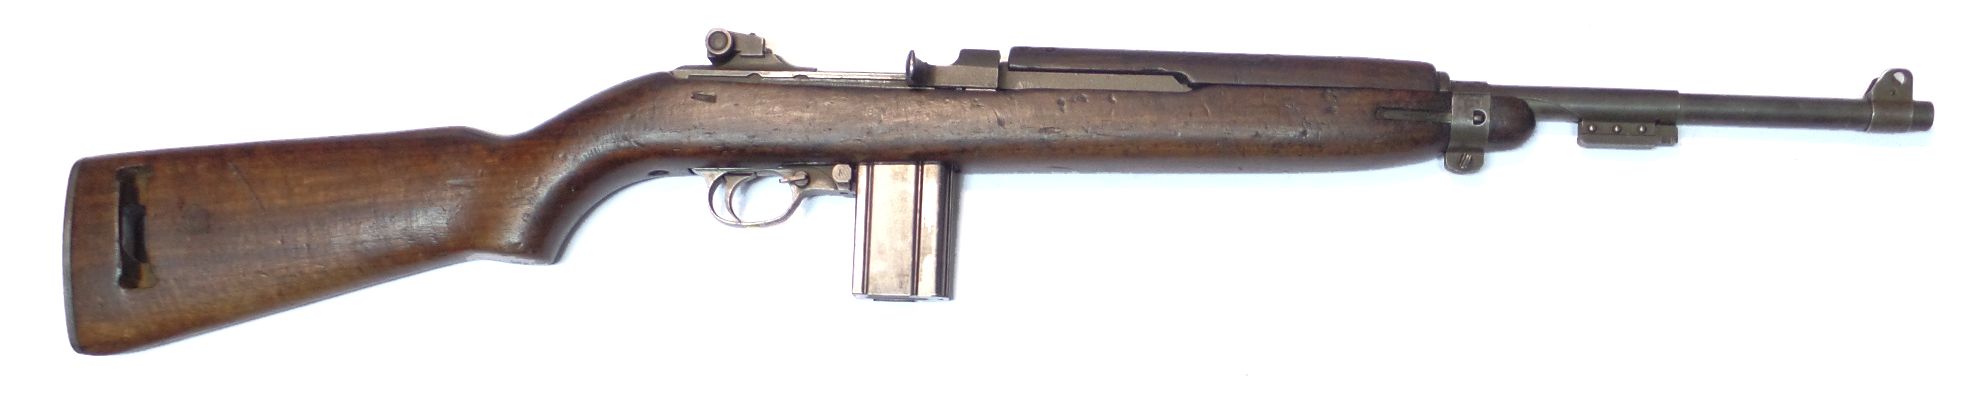 USM1 WINCHESTER calibre 30M1